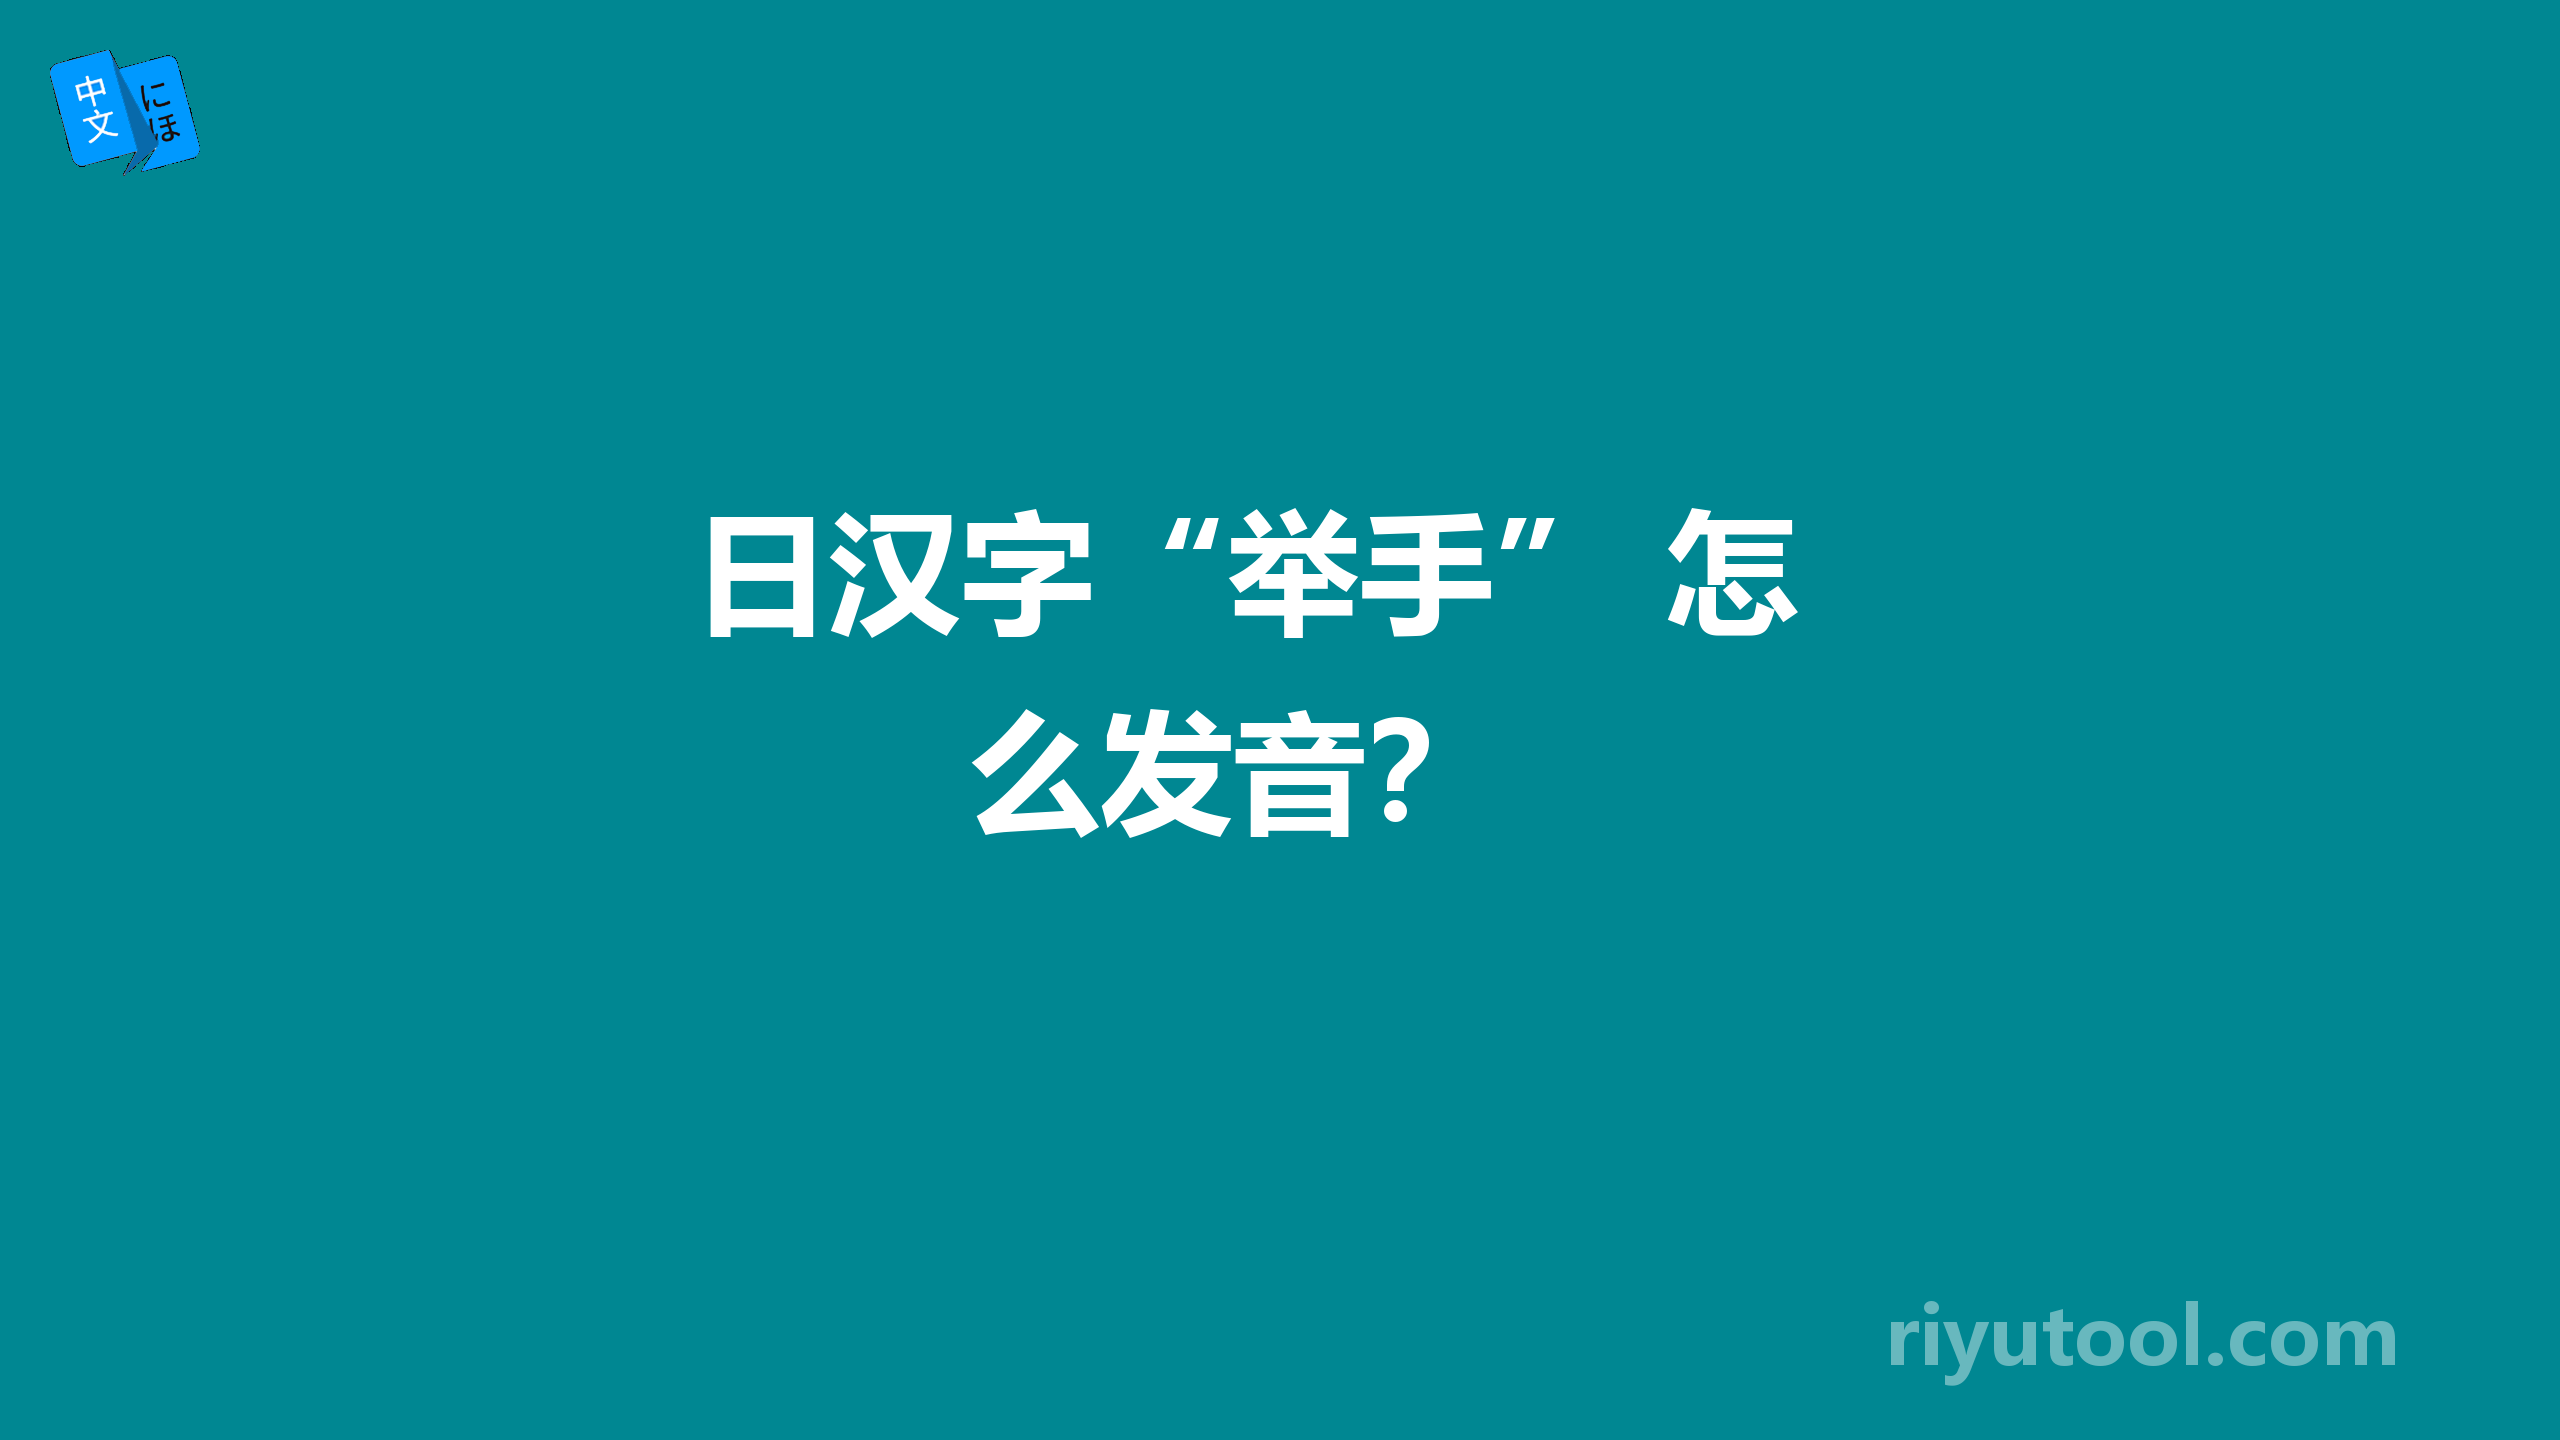  日汉字“举手” 怎么发音？ 